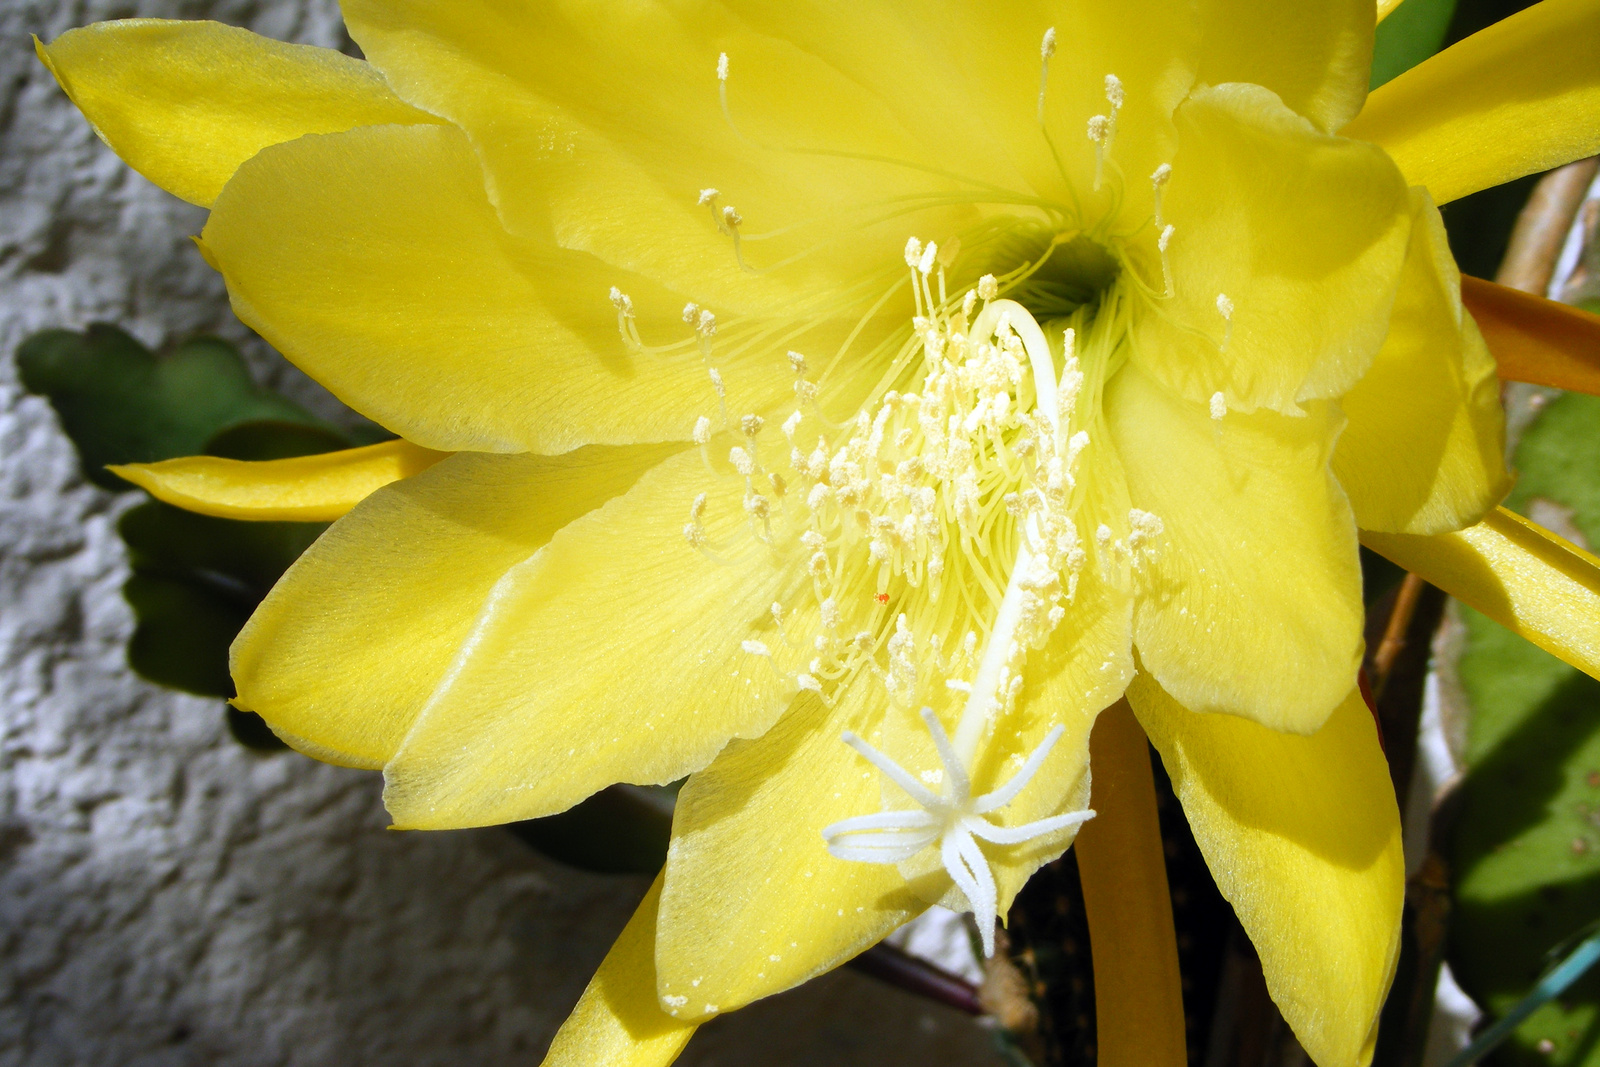 | Elkeveredett fotók #12.5 - Nagyi kaktusza |